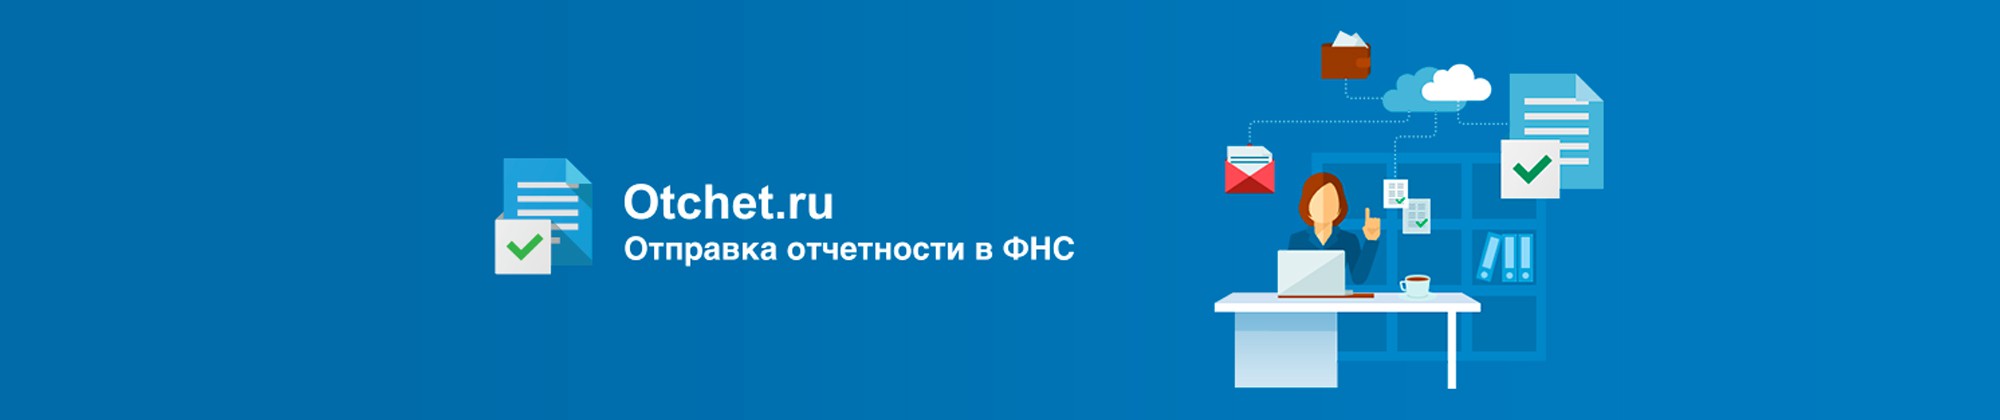 otchet.ru